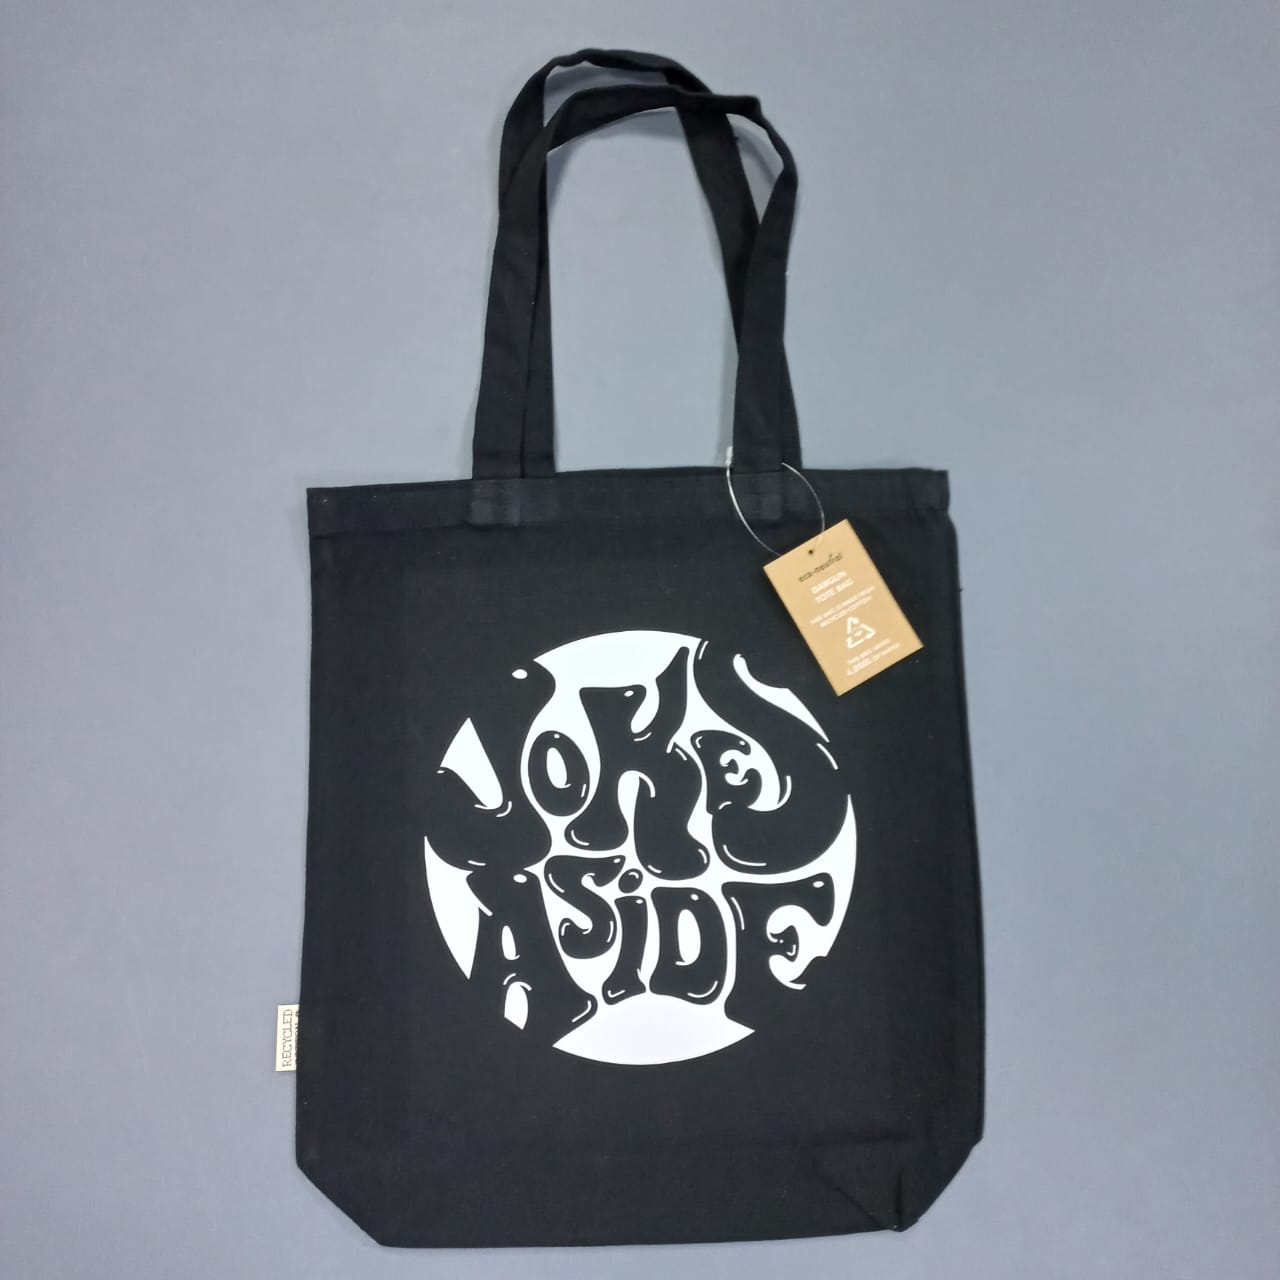 * Logo Tote Bag